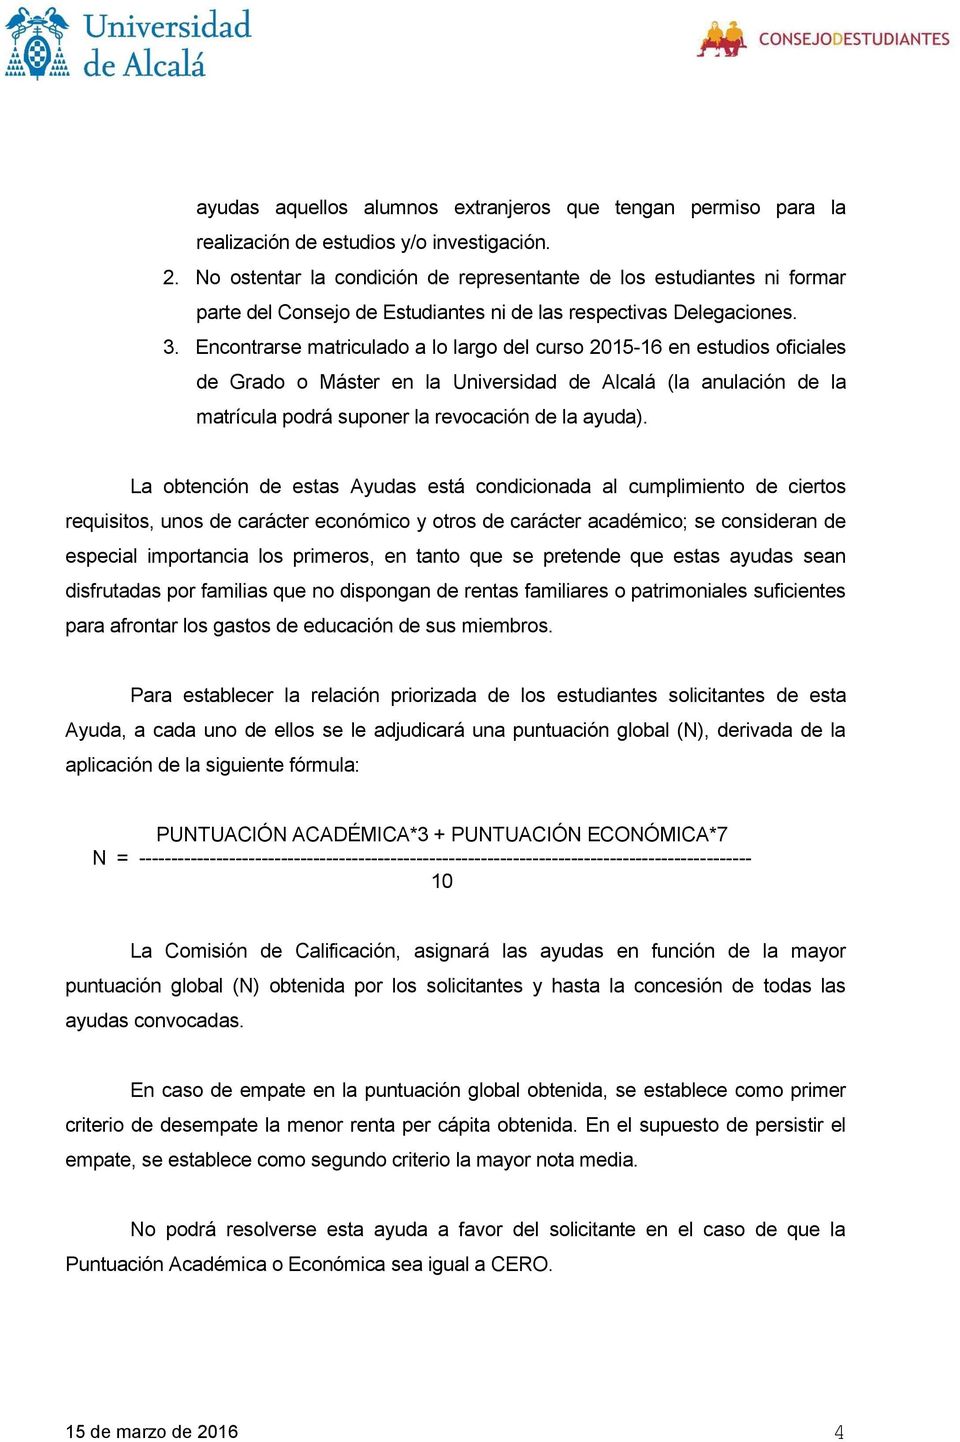 Encontrarse matriculado a lo largo del curso 2015-16 en estudios oficiales de Grado o Máster en la Universidad de Alcalá (la anulación de la matrícula podrá suponer la revocación de la ayuda).